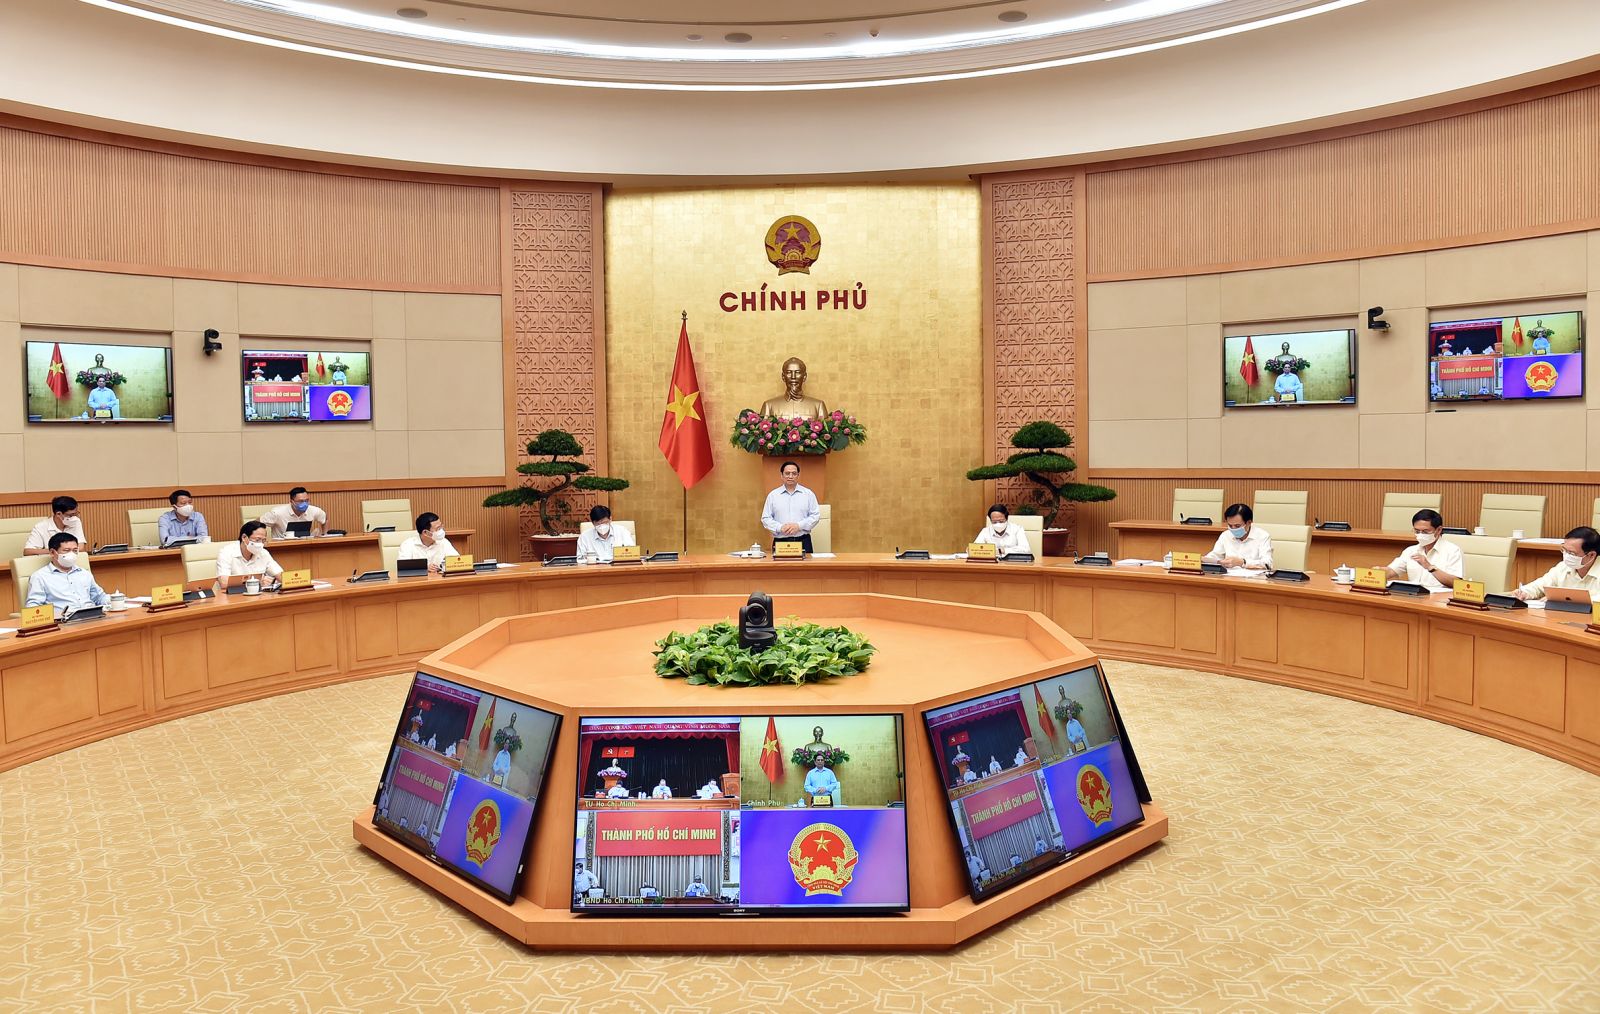 Thủ tướng Phạm Minh Chính: Việc thực hiện Chỉ thị 16 với TPHCM là một quyết định rất khó khăn nhưng cần thiết và phù hợp trong lúc này, đã được cân nhắc kỹ lưỡng, trao đi đổi lại nhiều lần